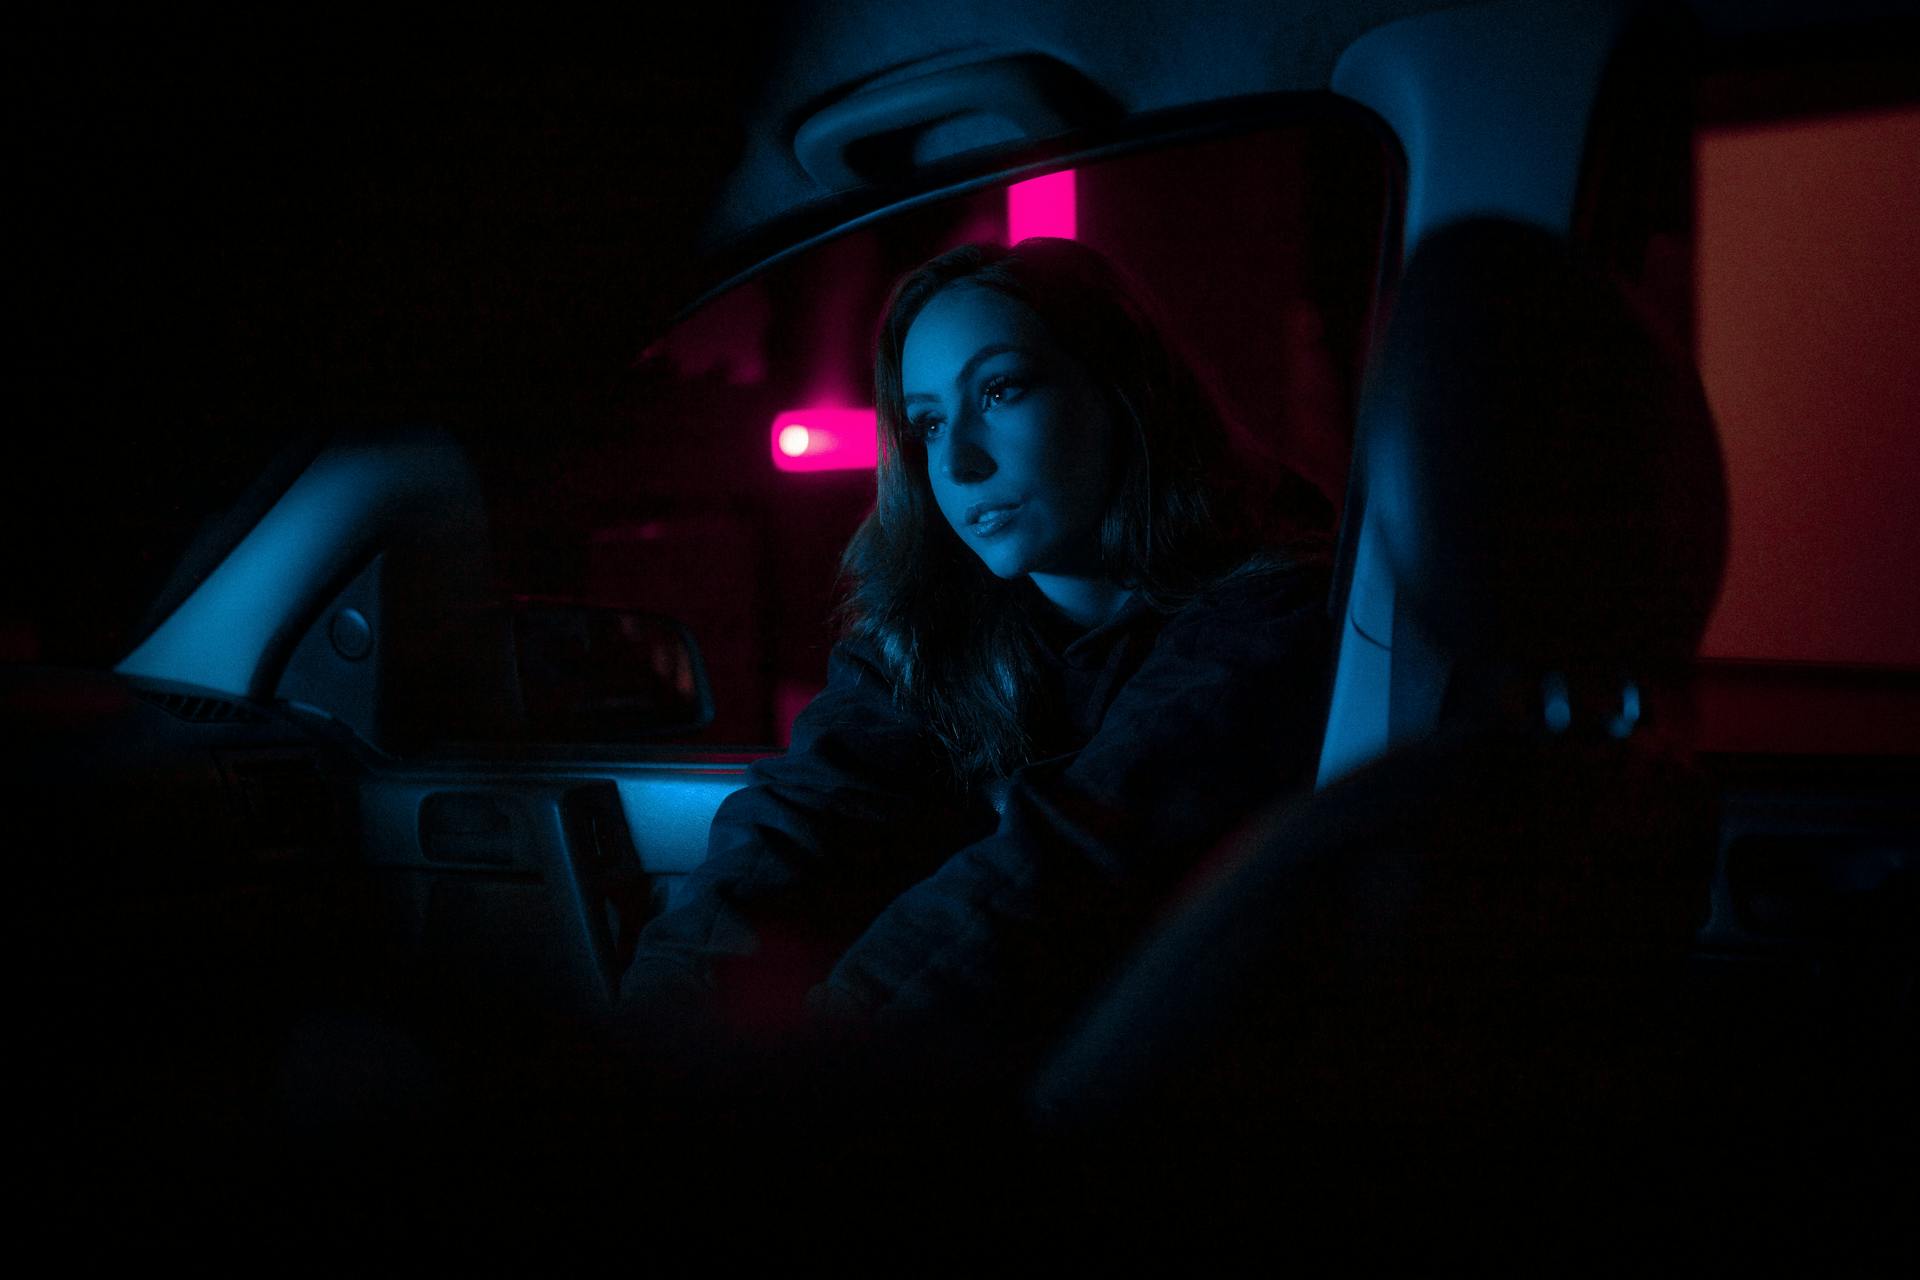 Une femme assise dans une voiture | Source : Pexels